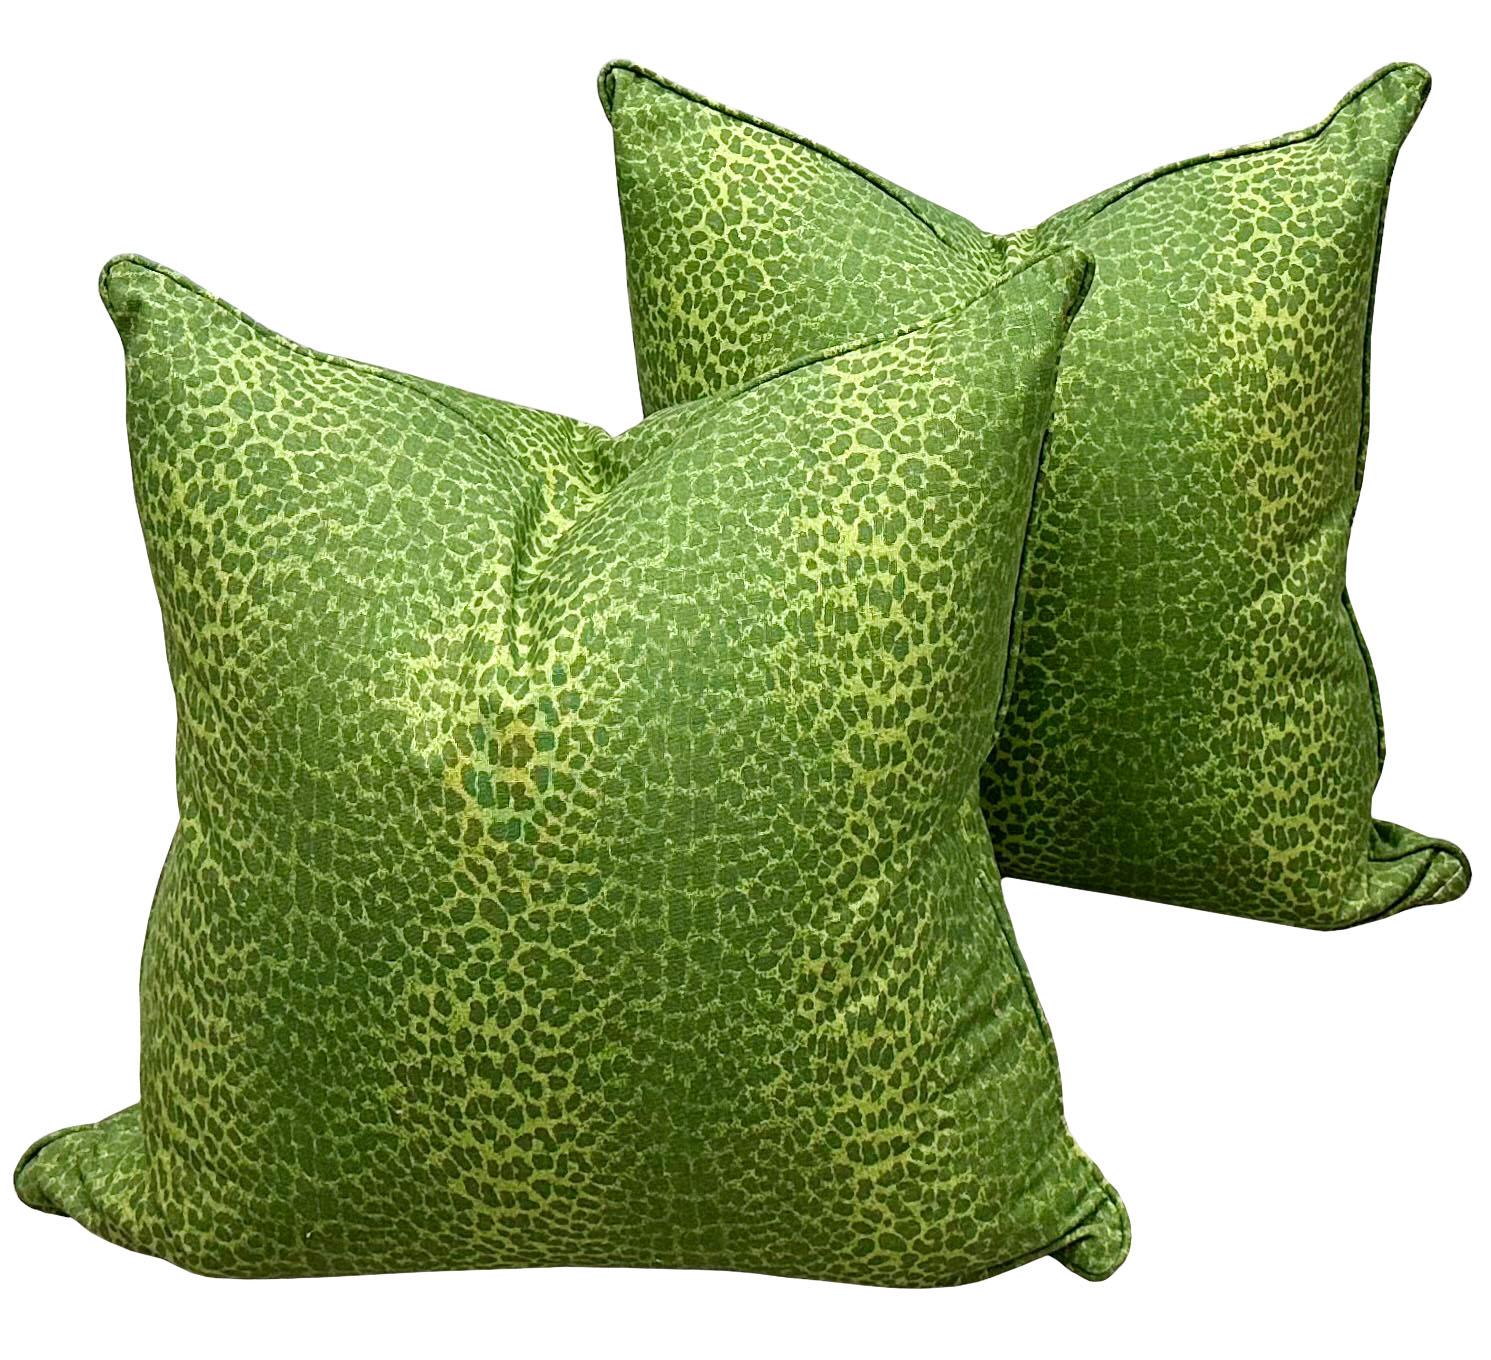 Une fabuleuse paire de coussins design des années 1970 en lin et coton d'un vert éclatant. Ces oreillers uniques sont parfaits pour ajouter une touche de couleur supplémentaire. 